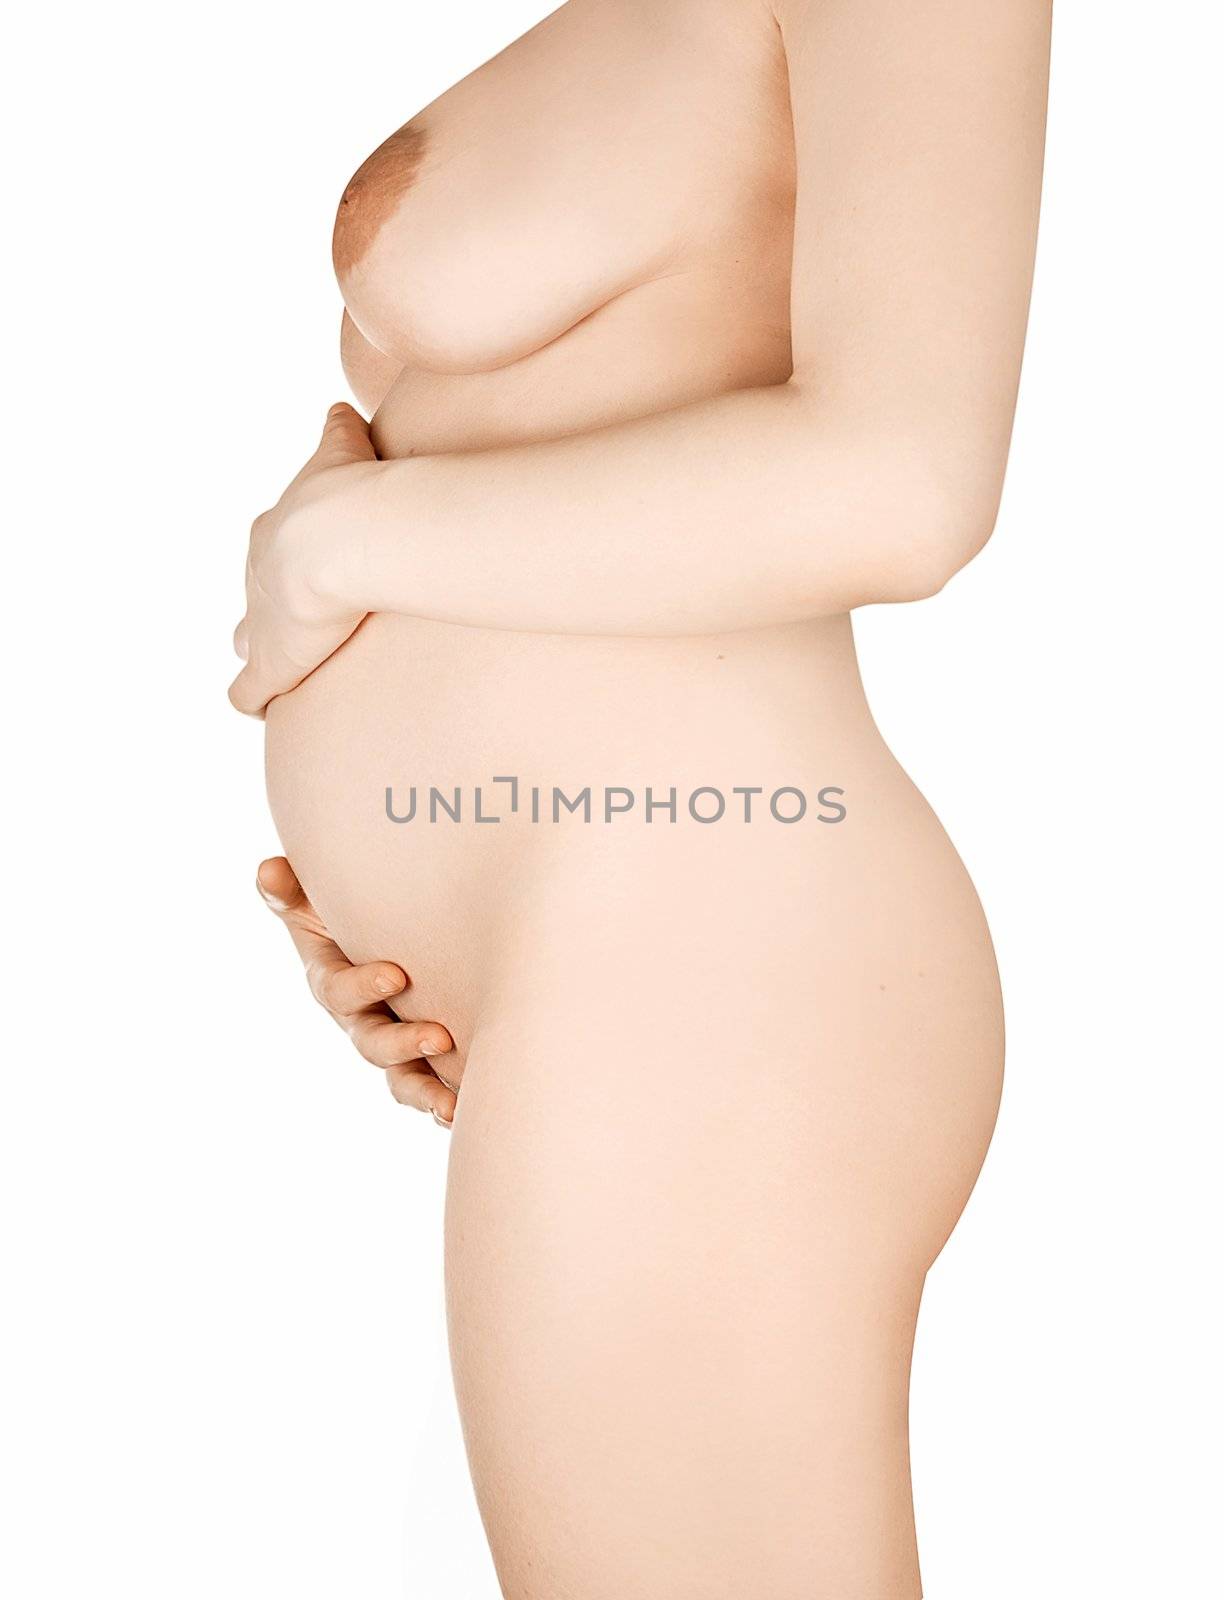 pregnant woman by rusak